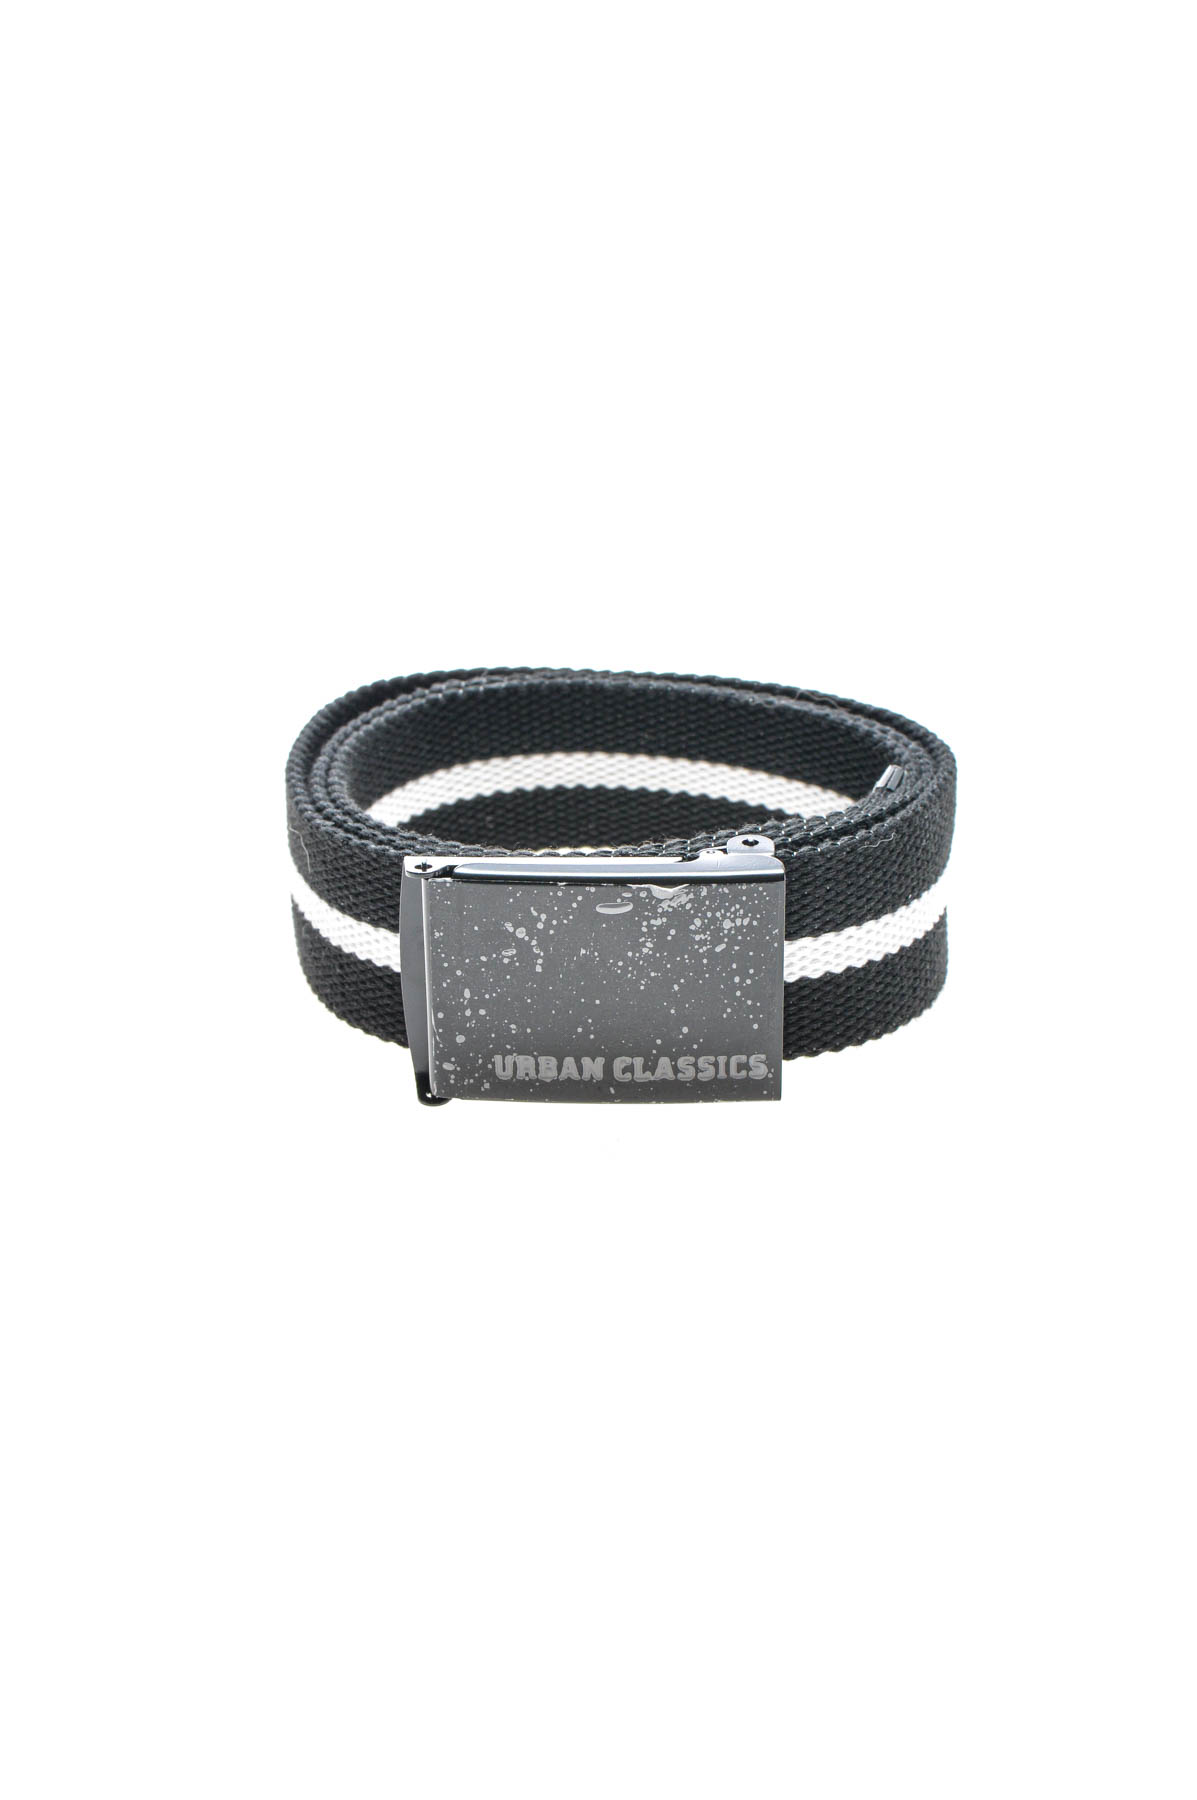 Ladies's belt - URBAN CLASSICS - 0